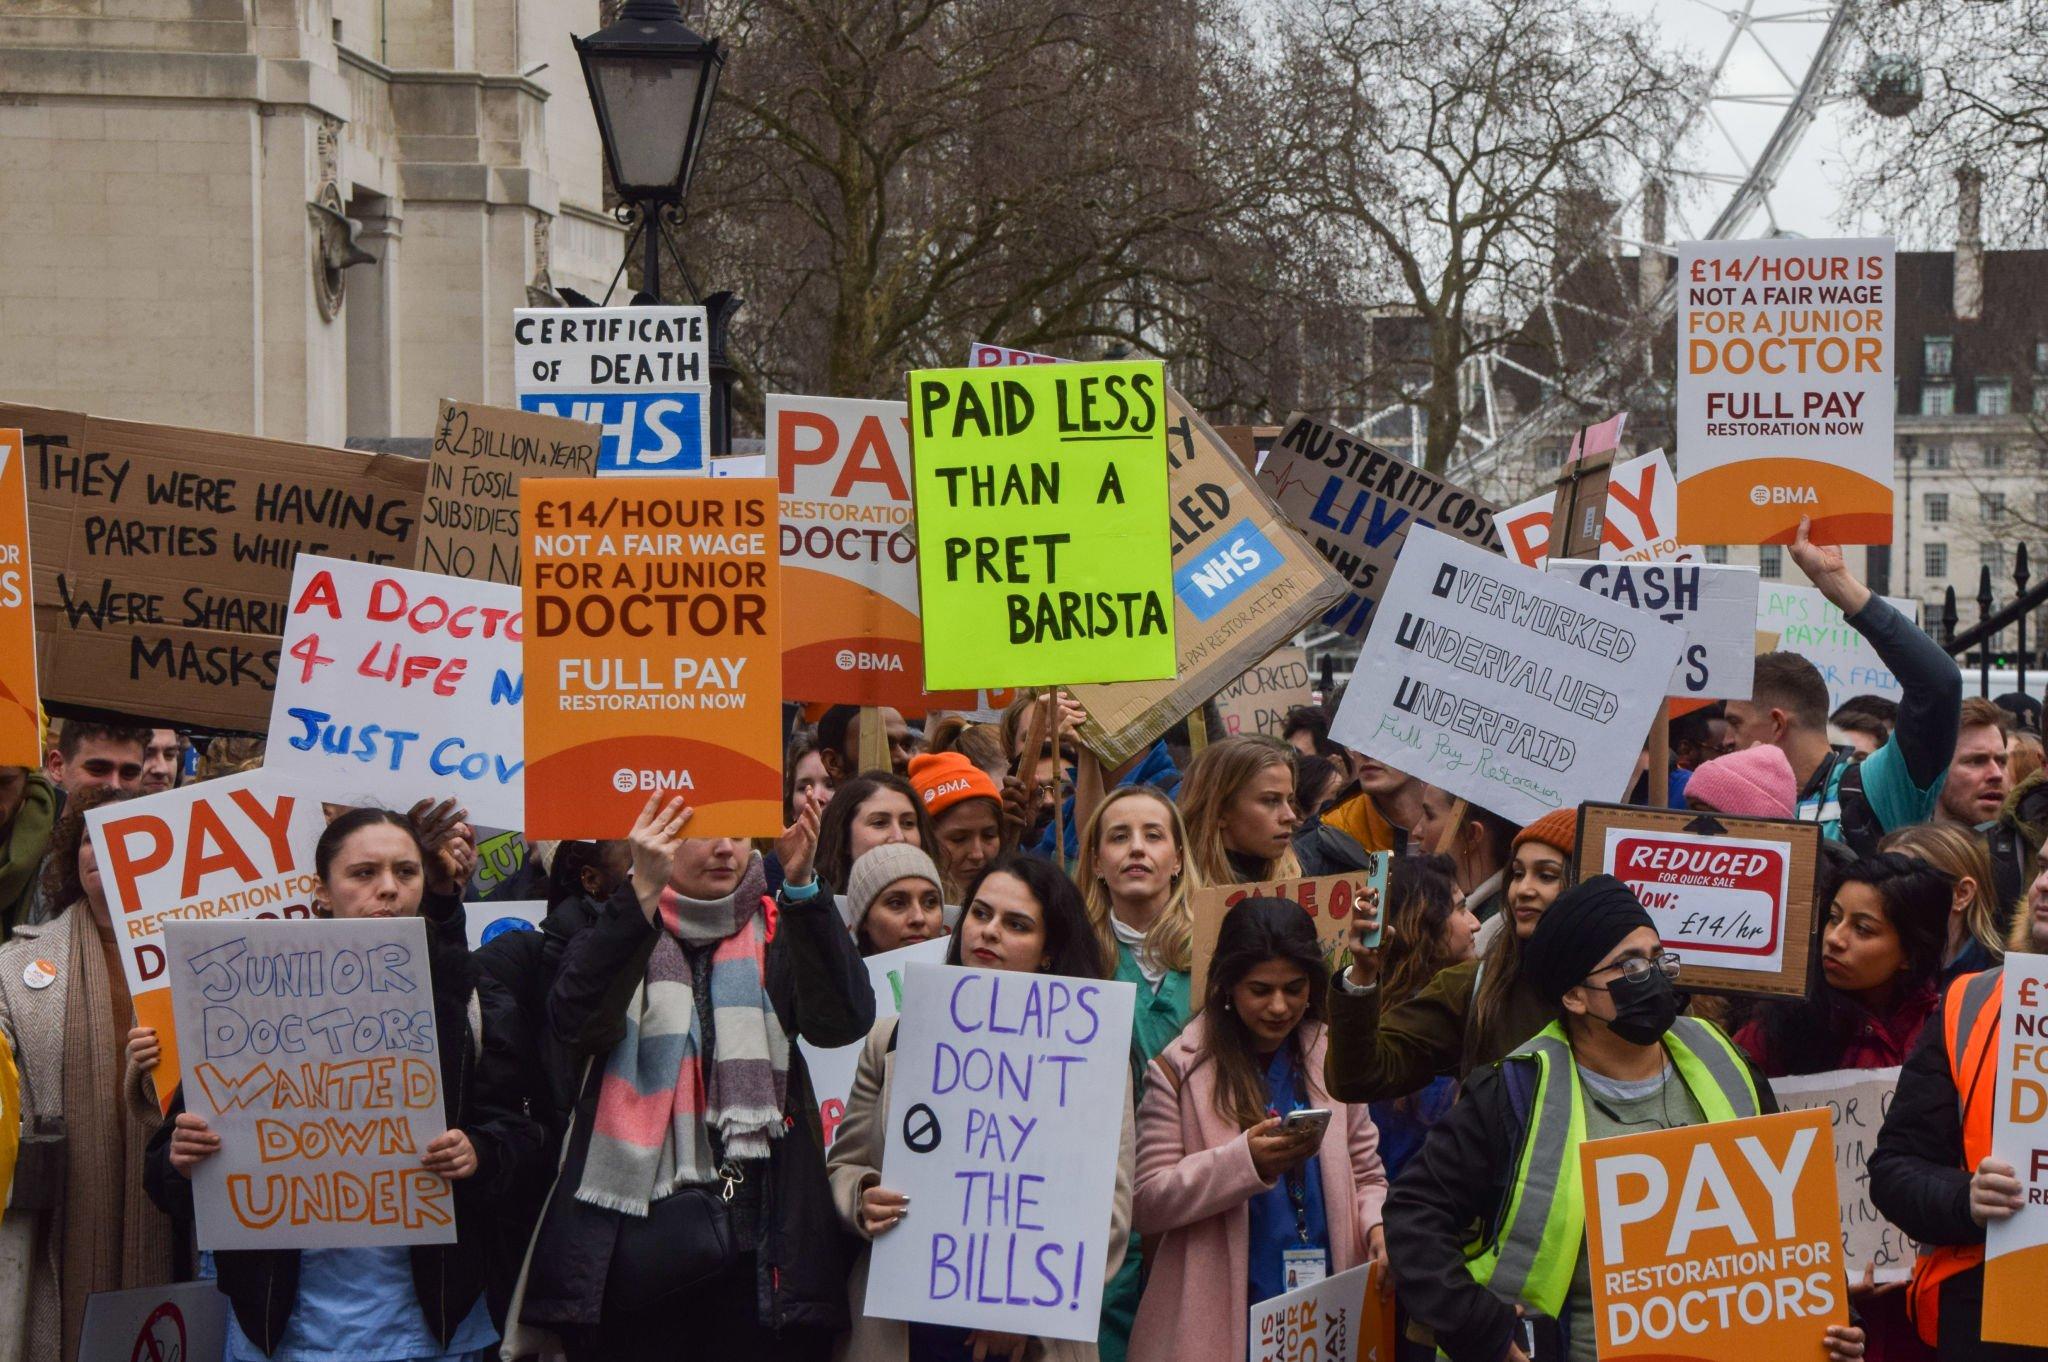 آلاف الأطباء يعتزمون الإضراب مرة أخرى في إنجلترا